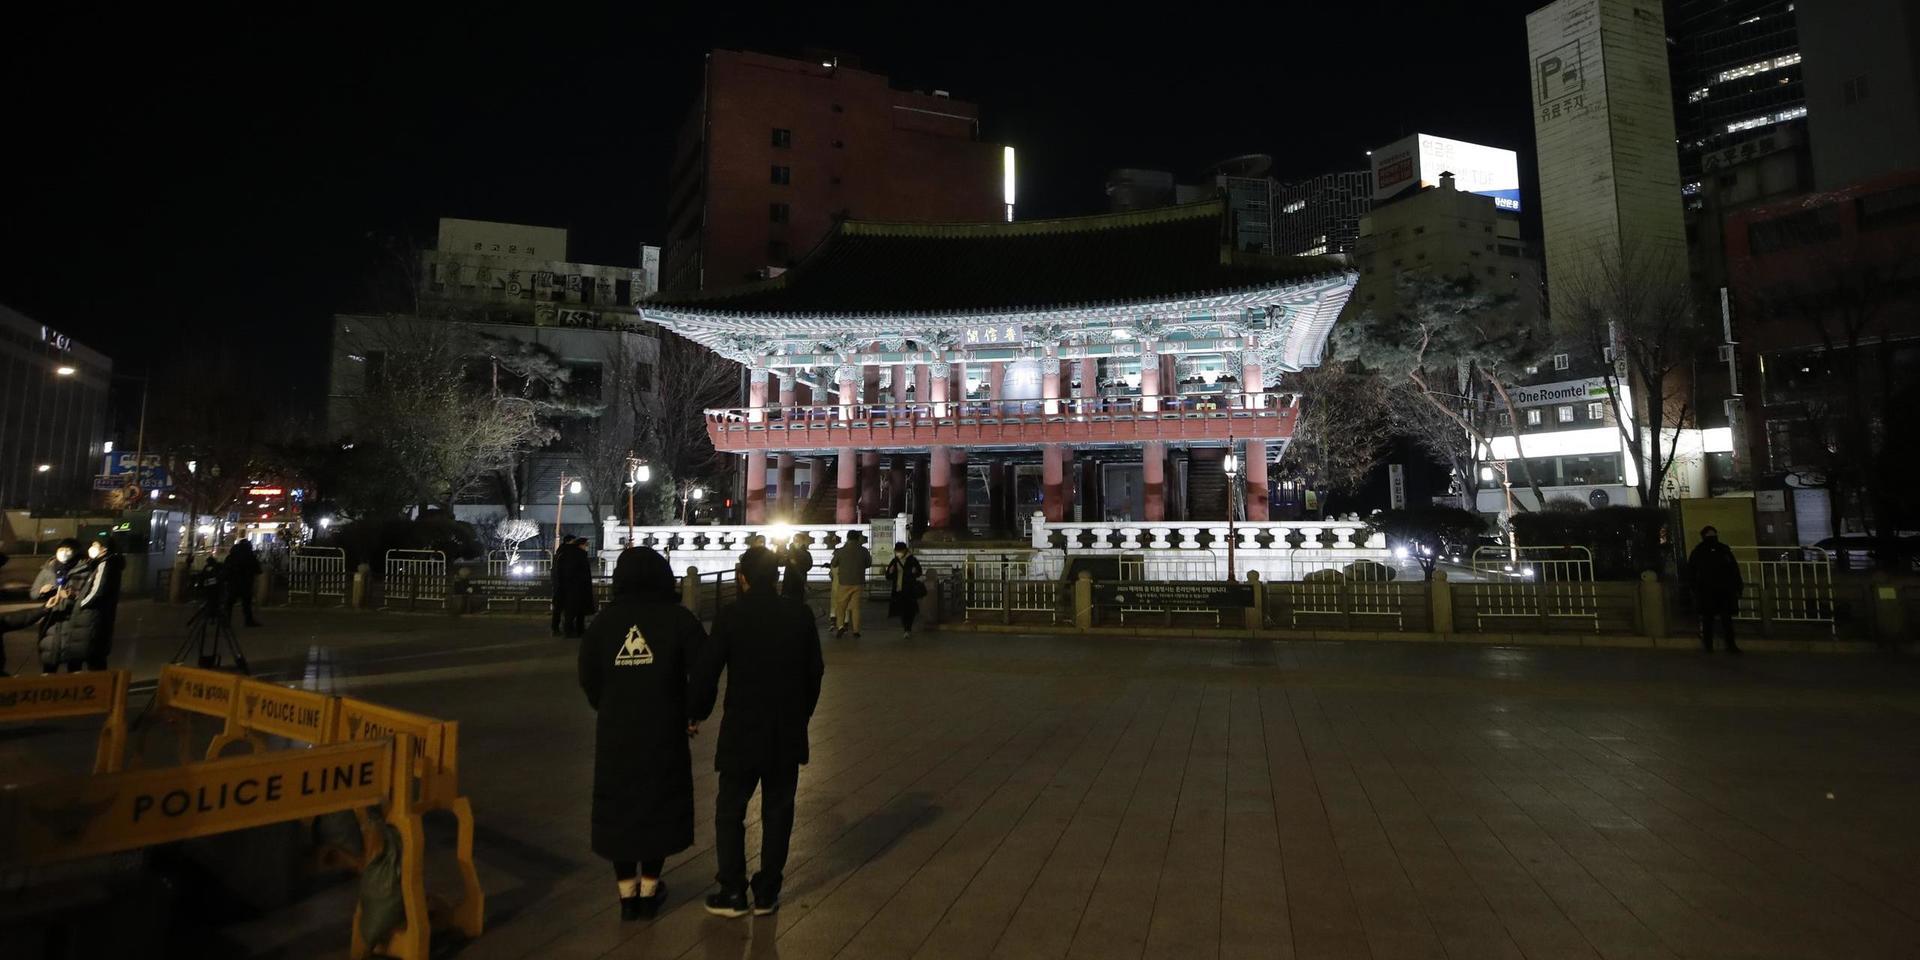 Nästintill folktomt framför Bosingakpaviljongen på nyårsafton, där firandet var inställt till följd av pandemin.